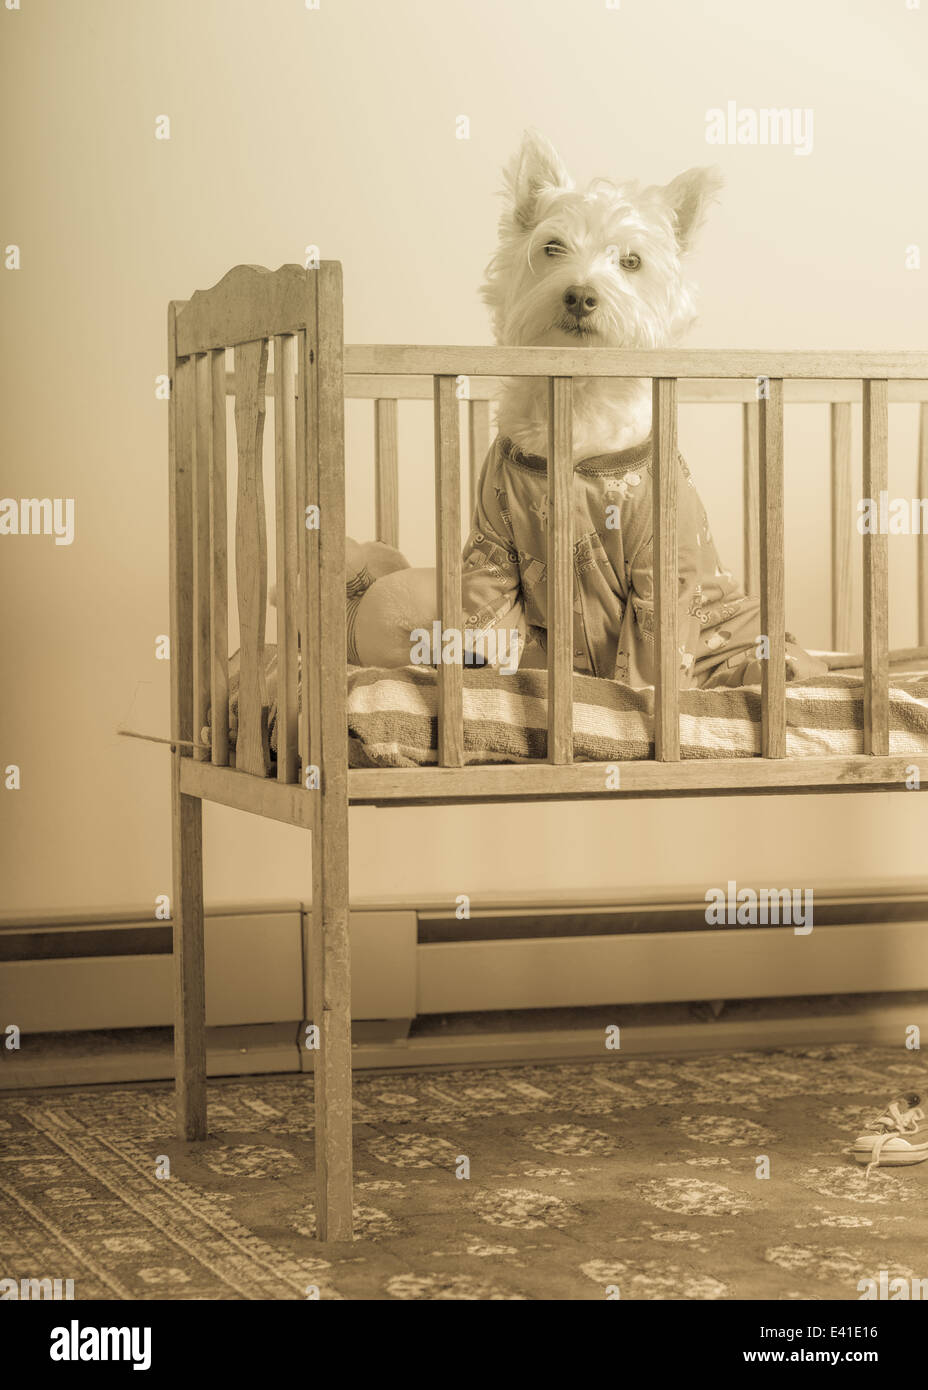 https://c8.alamy.com/comp/E41E16/a-small-white-dog-wearing-pajamas-inside-a-baby-crib-in-sepia-tone-E41E16.jpg